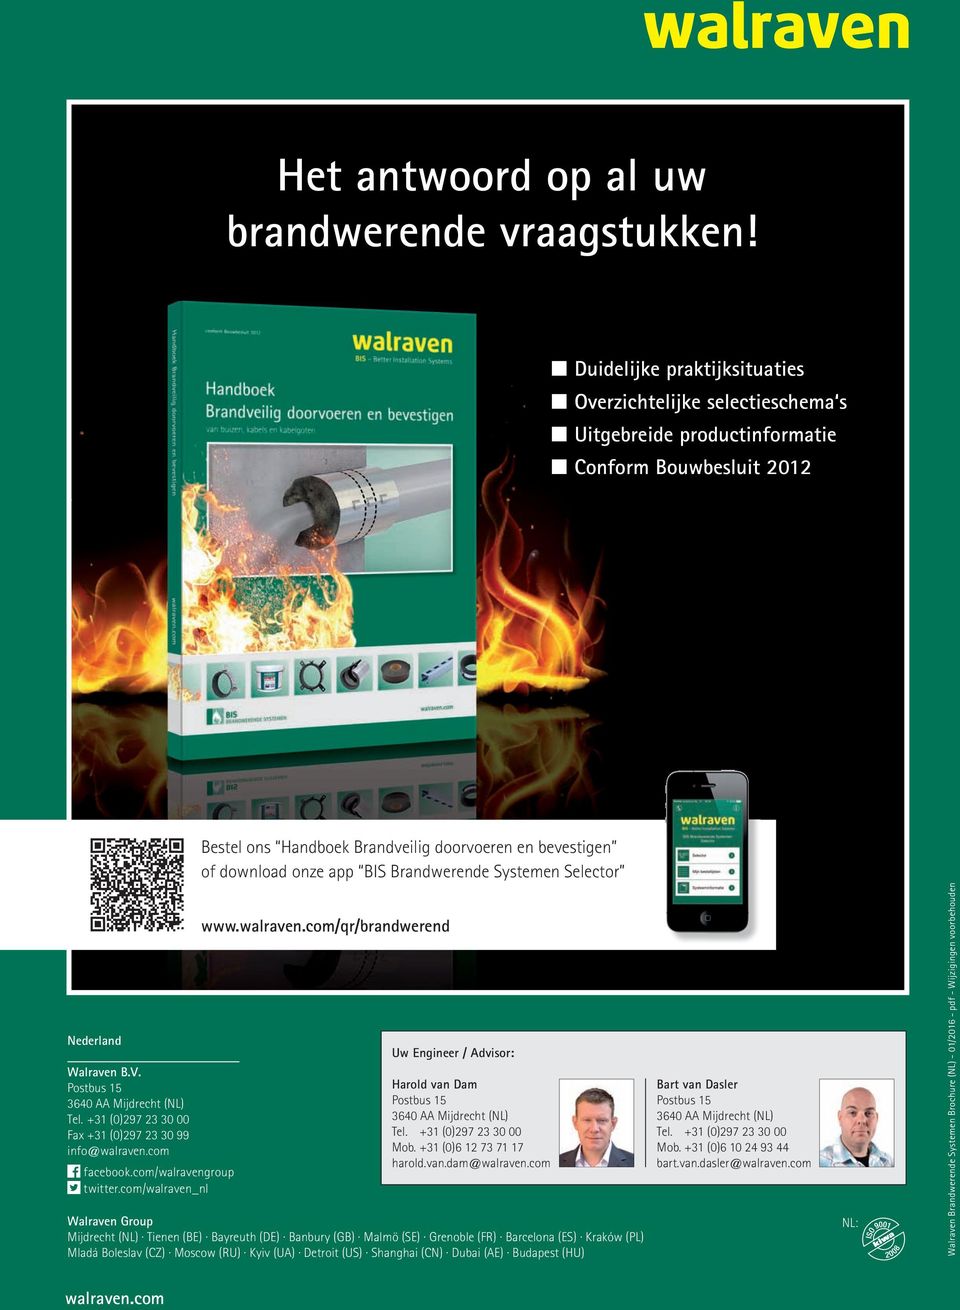 com/walraven_nl Bestel ons Handboek Brandveilig doorvoeren en bevestigen of download onze app BIS Brandwerende Systemen Selector www.walraven.com/qr/brandwerend Uw Engineer / Advisor: Harold van Dam Postbus 15 3640 AA Mijdrecht (NL) Tel.